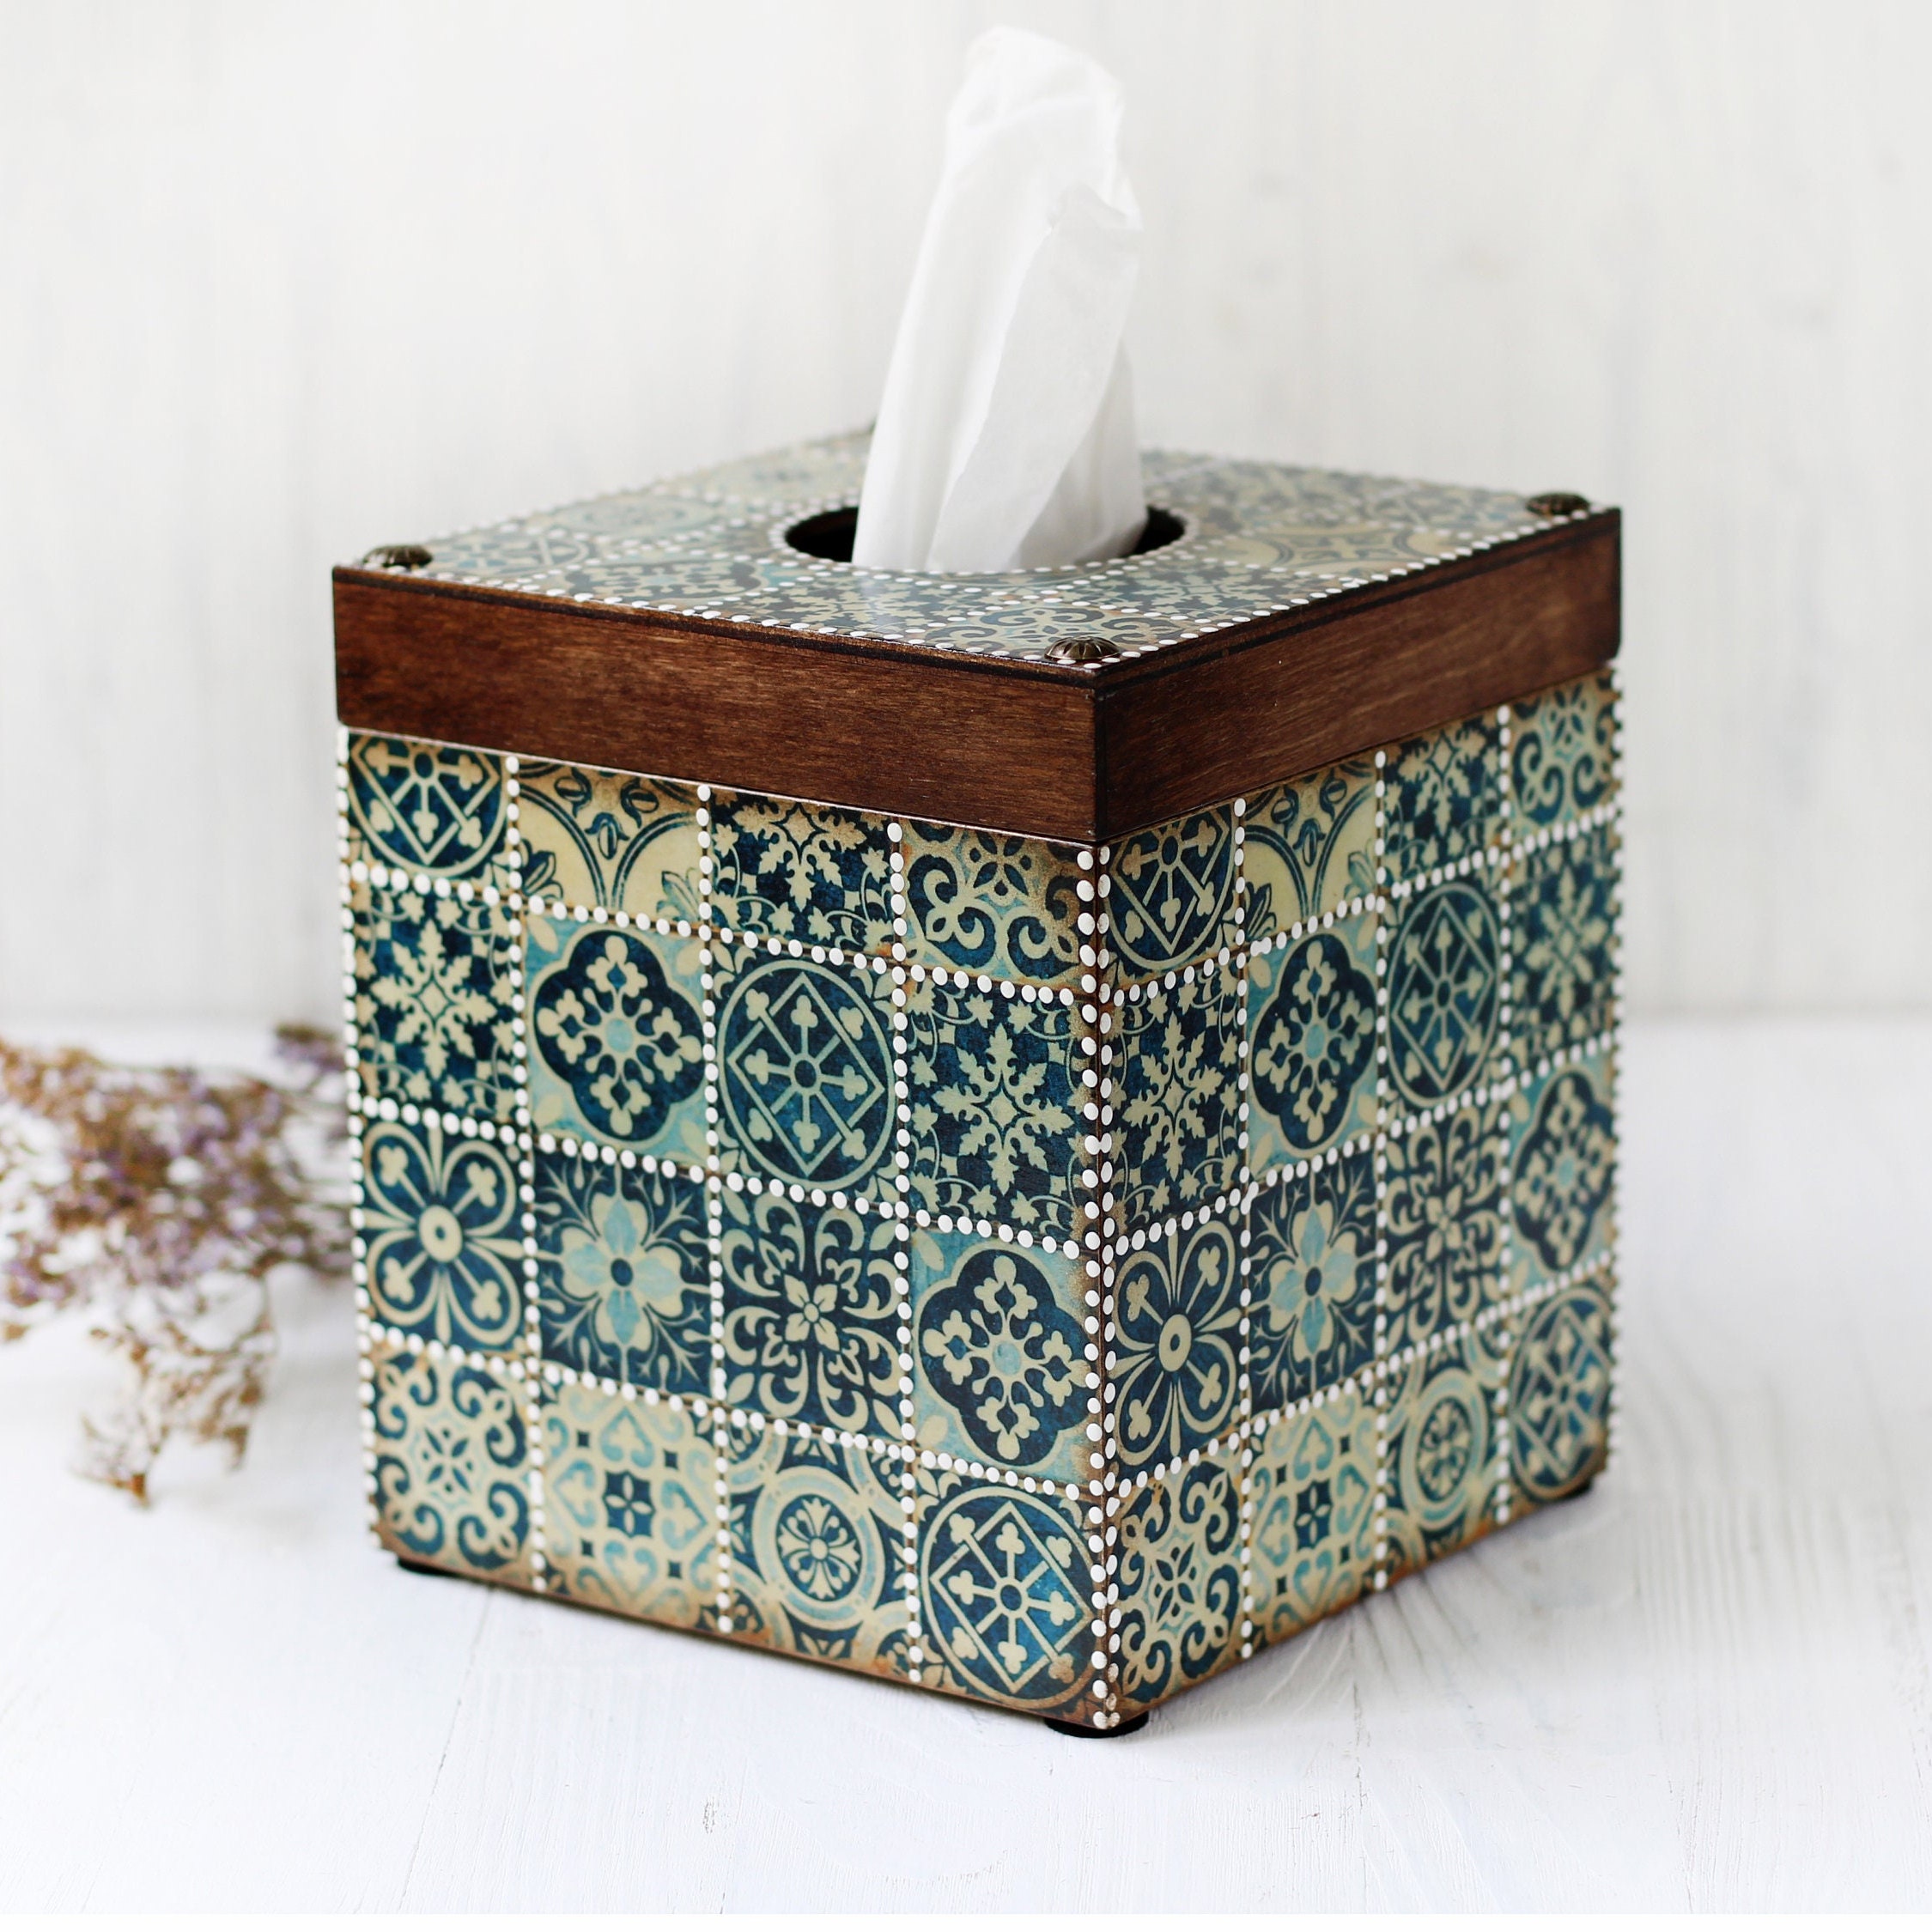 Handcrafted Talavera Hacienda Ceramic Tissue Box Cover - Classic